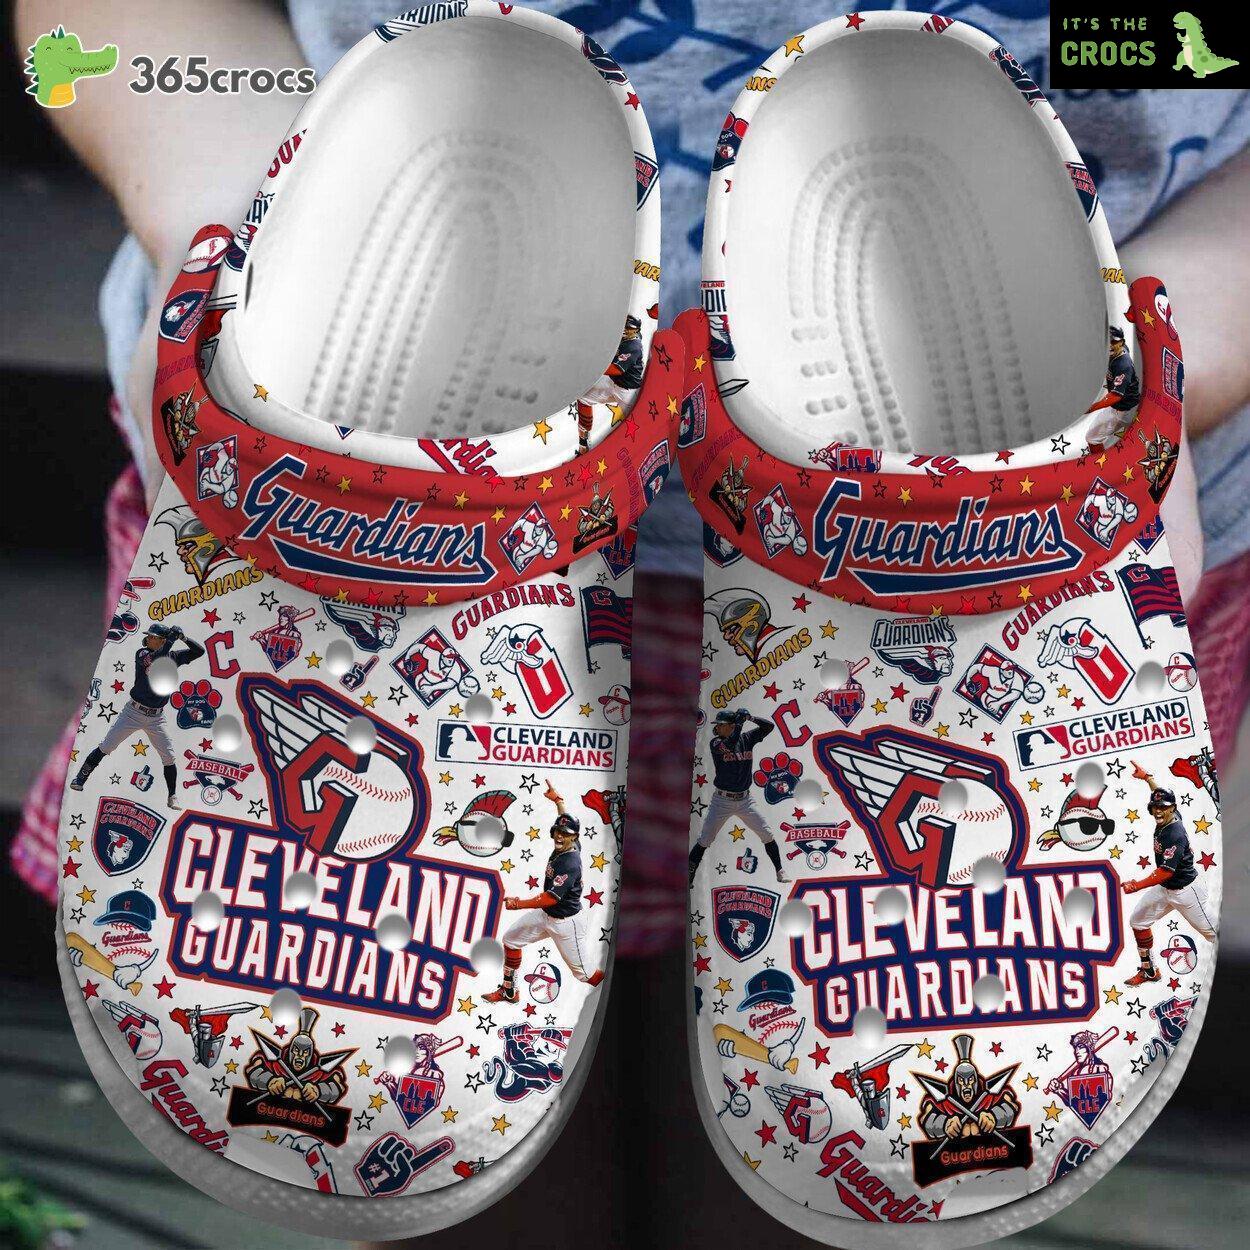 Premium Cleveland Guardians MLB Sport Crocs Clogs Shoes